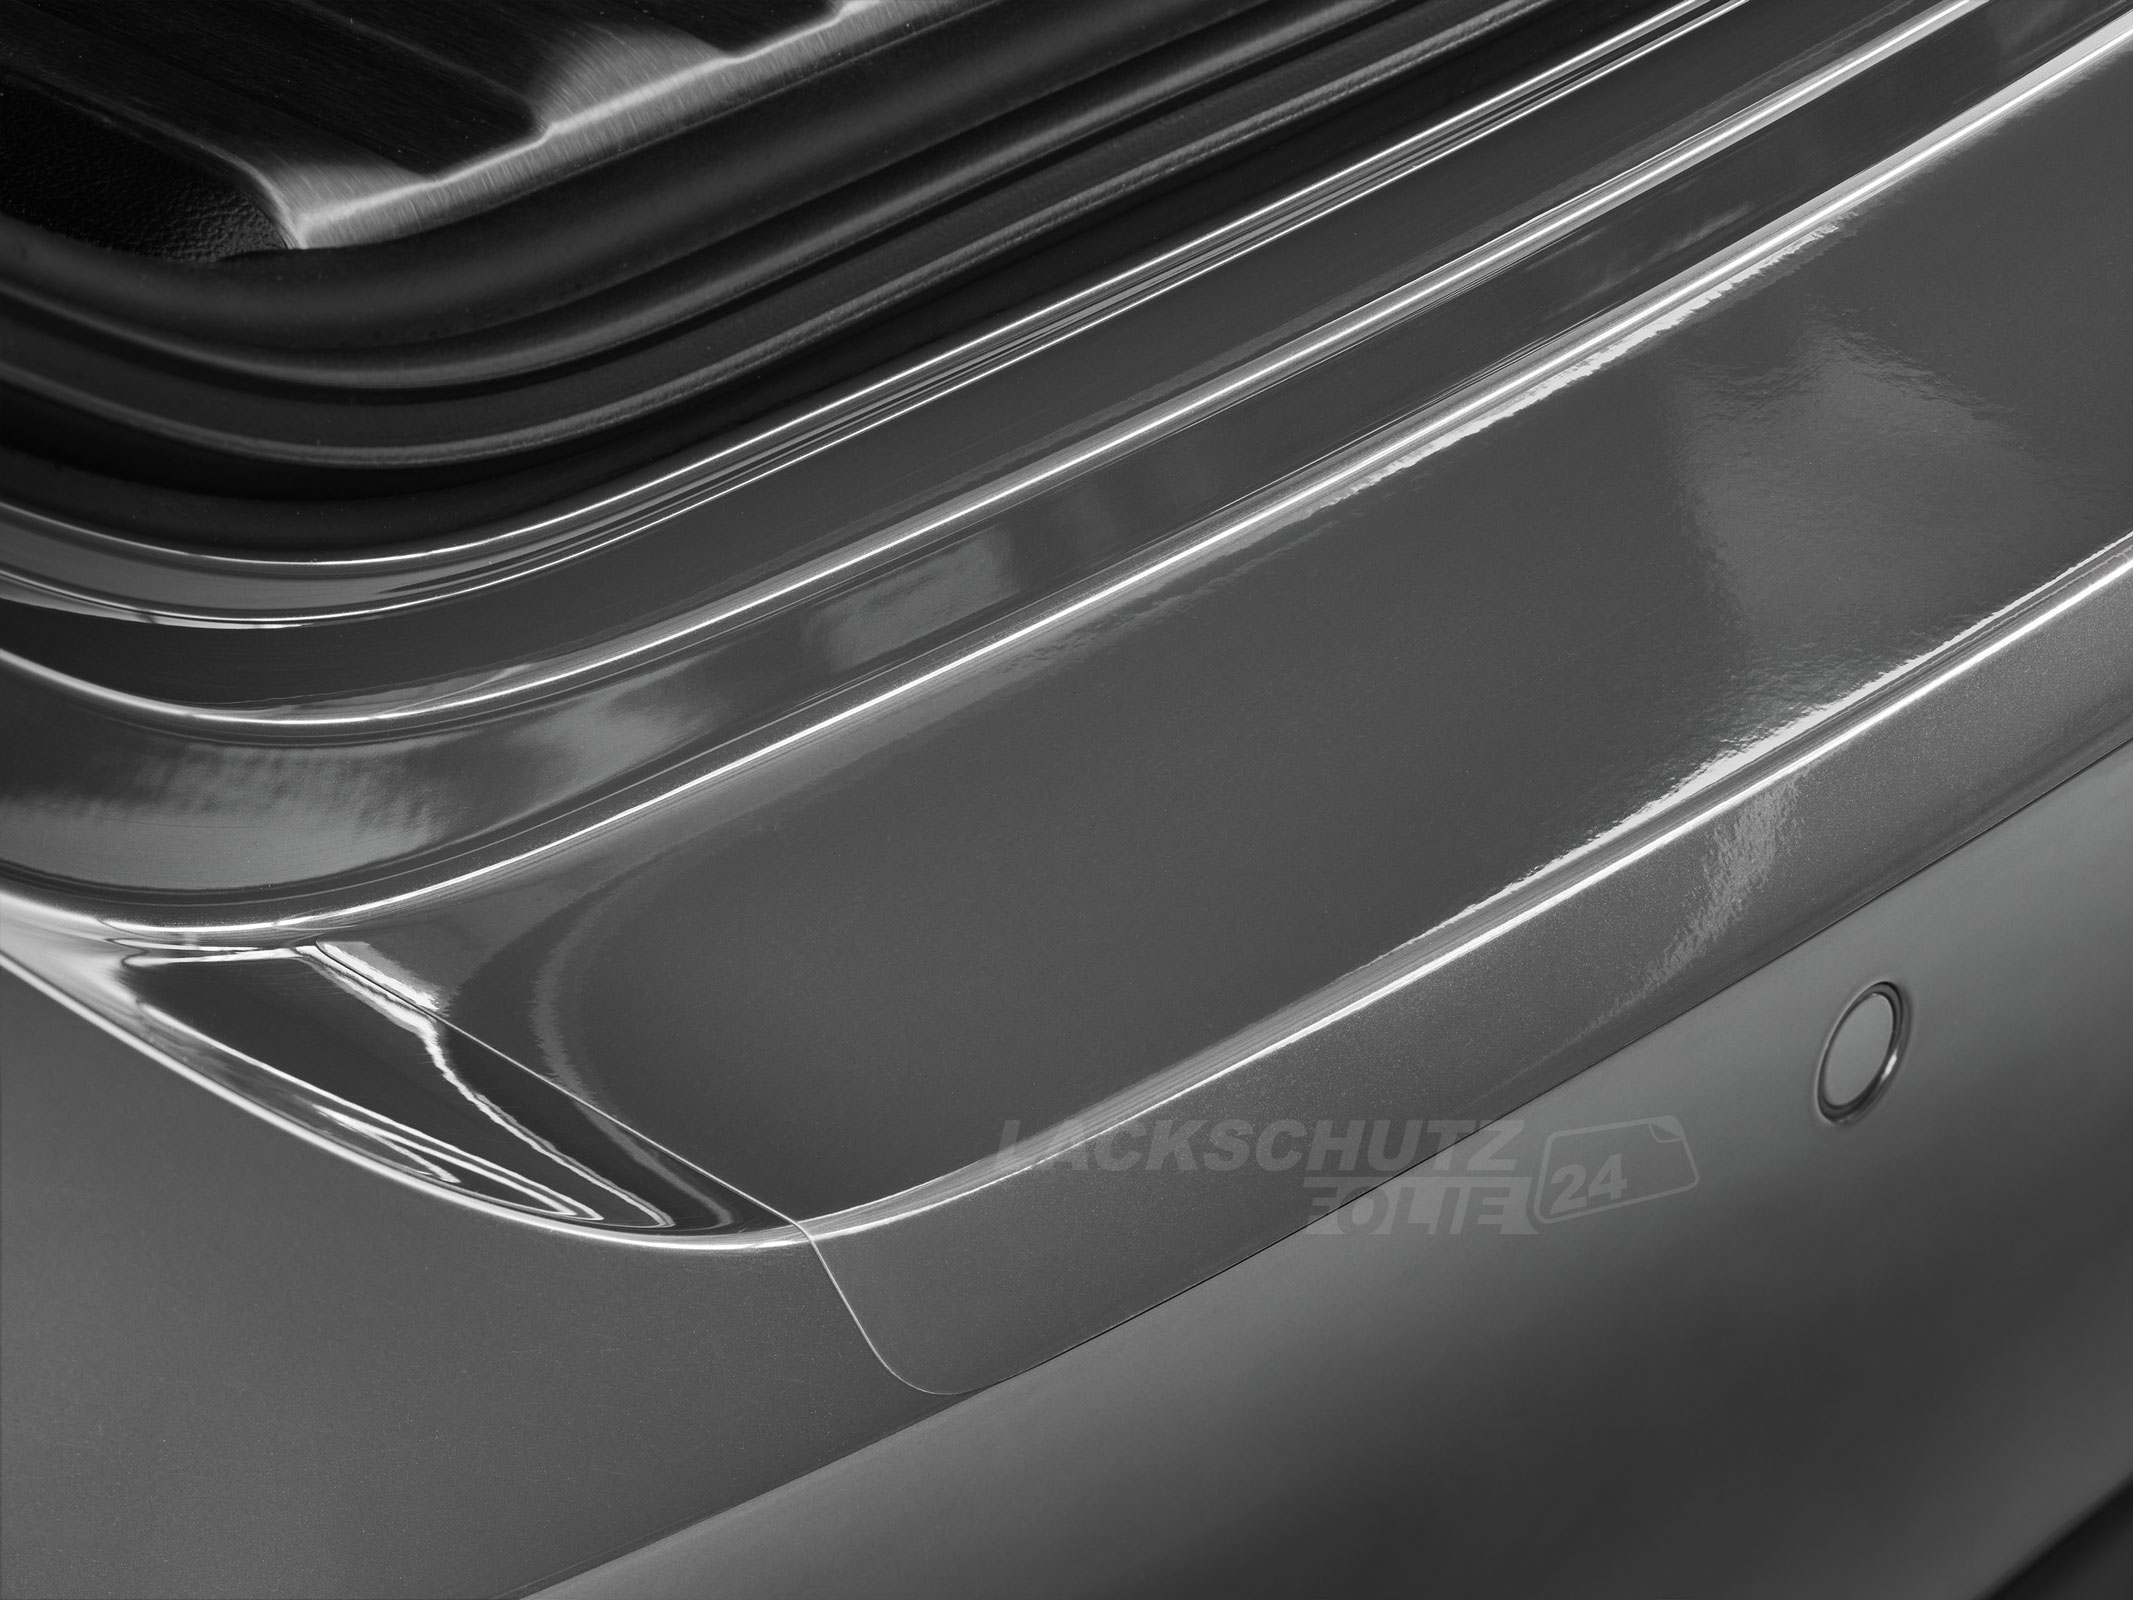 Ladekantenschutzfolie - Transparent Glatt Hochglänzend für Ford Fiesta Typ MK7, BJ 10/2008-2012